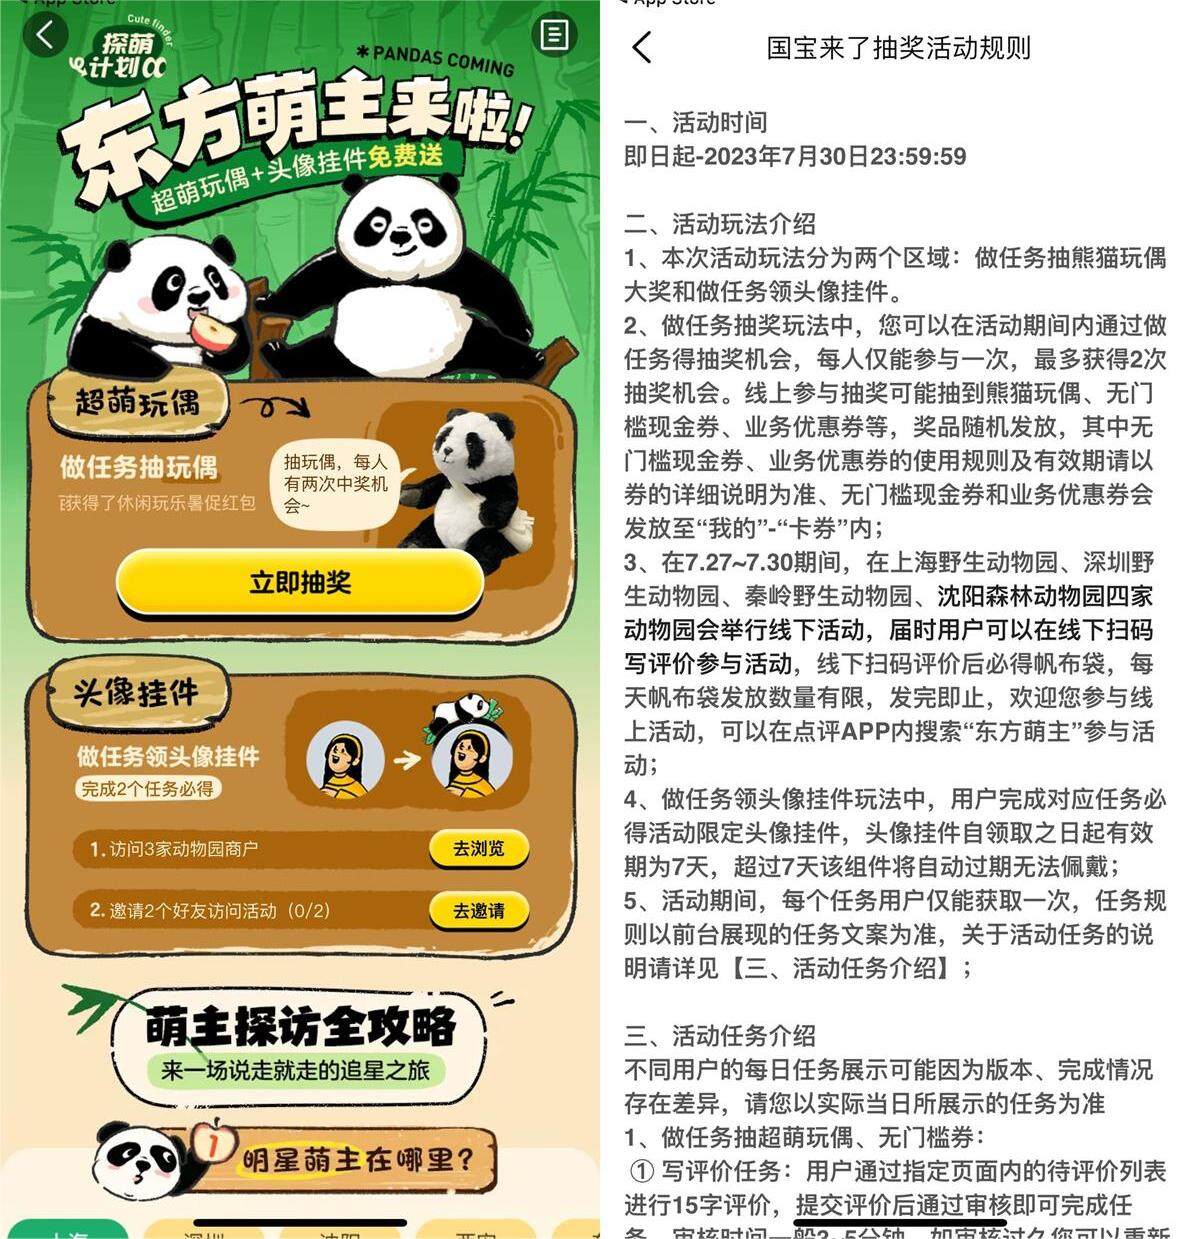 大众点评东方萌主来啦写评价免费抽取熊猫玩偶